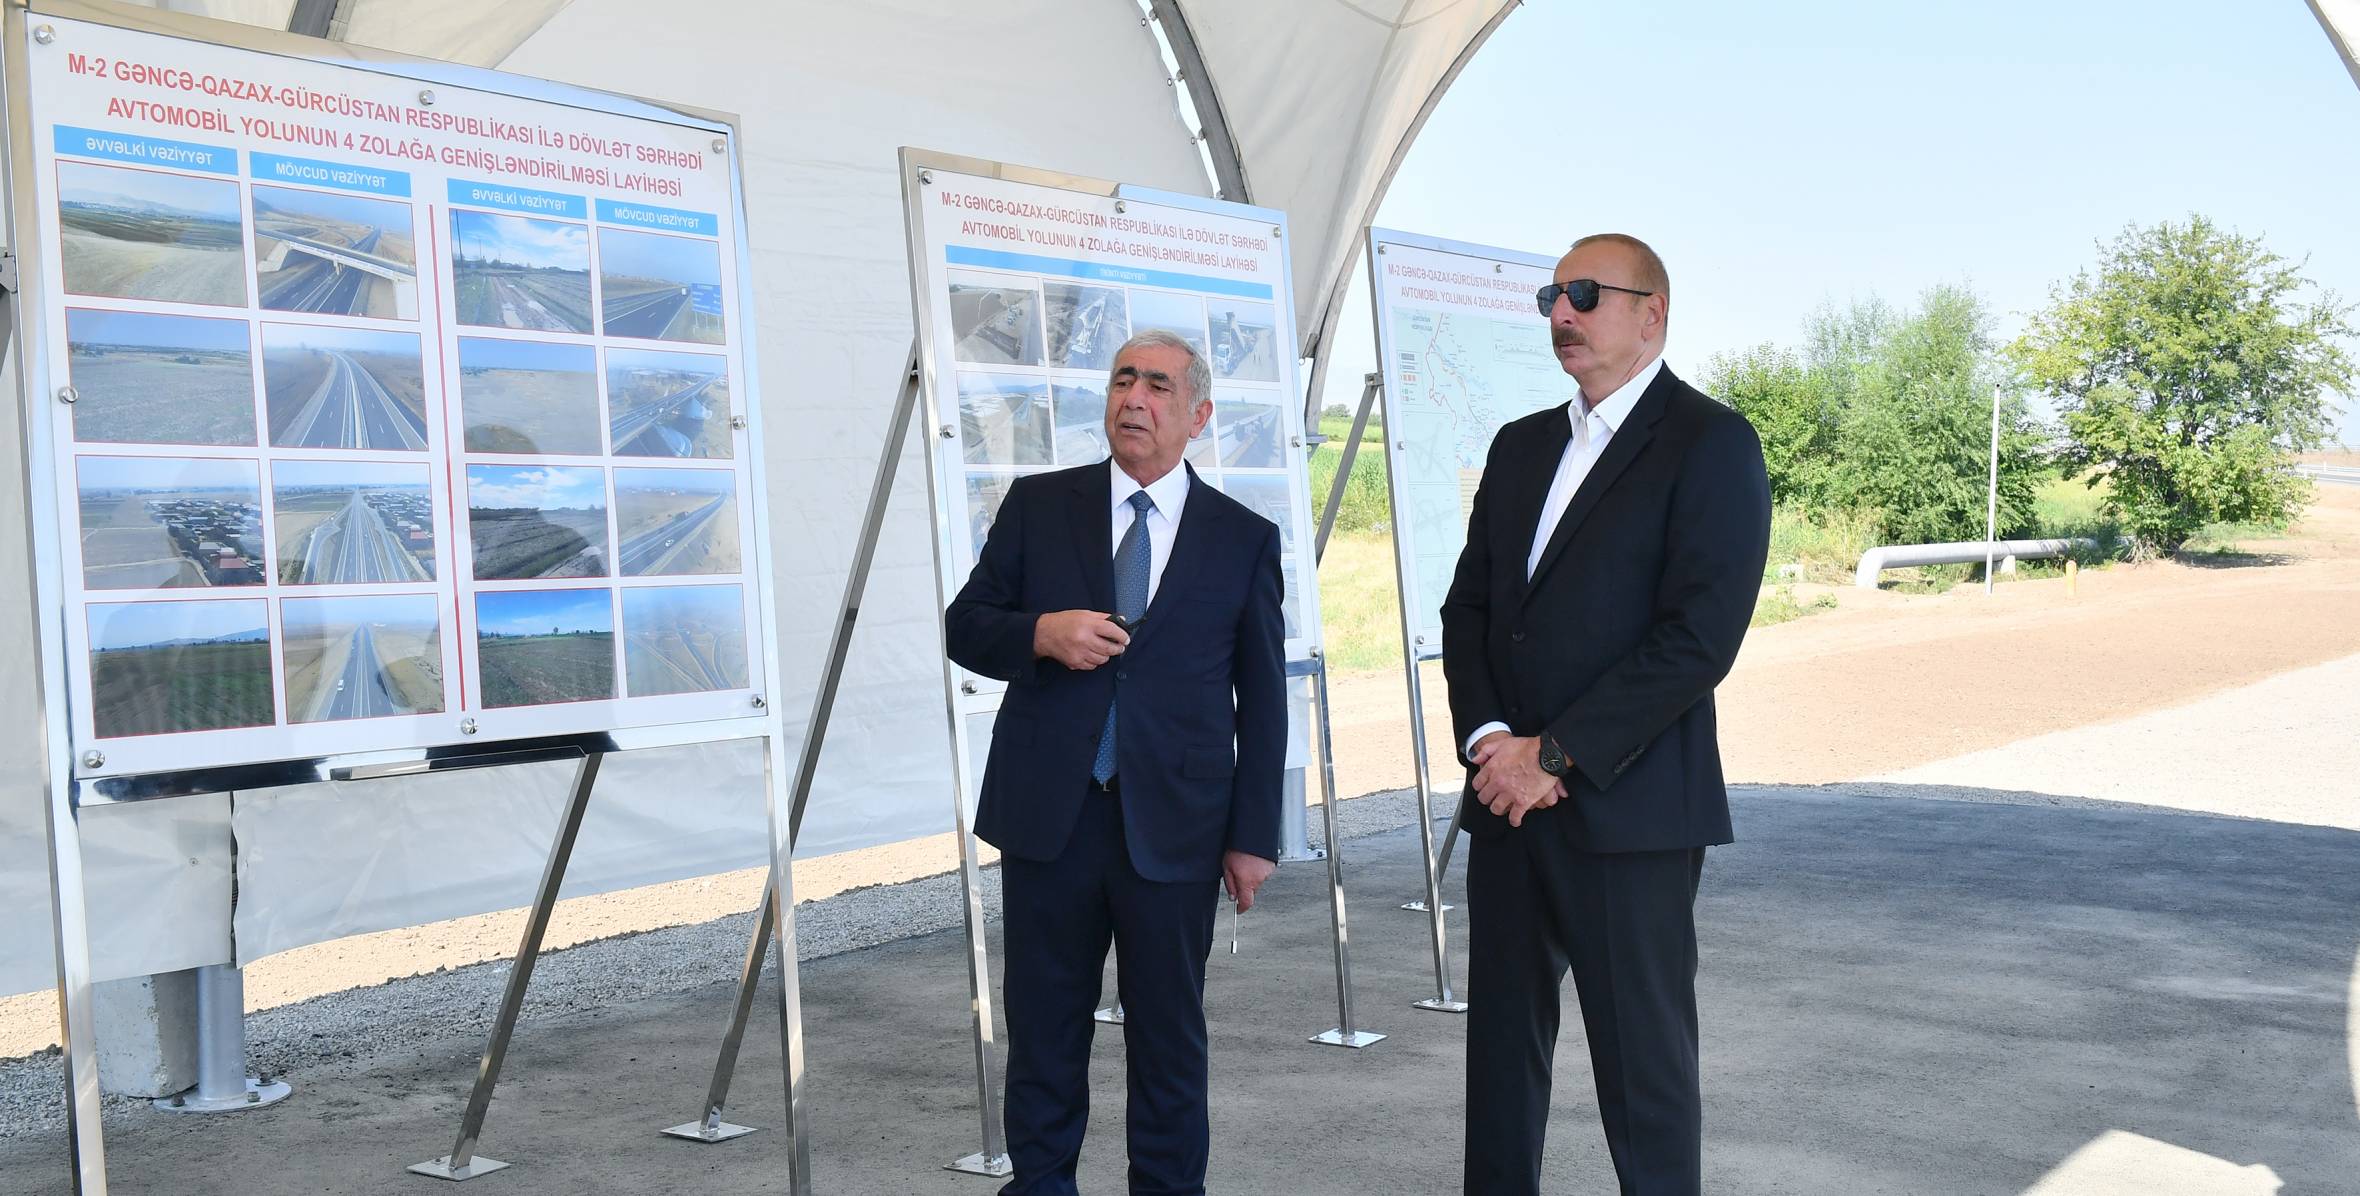 Ильхам Алиев принял участие в открытии участка Гянджа-Газахбейли автомобильной дороги Баку-Газах-государственная граница с Грузией 